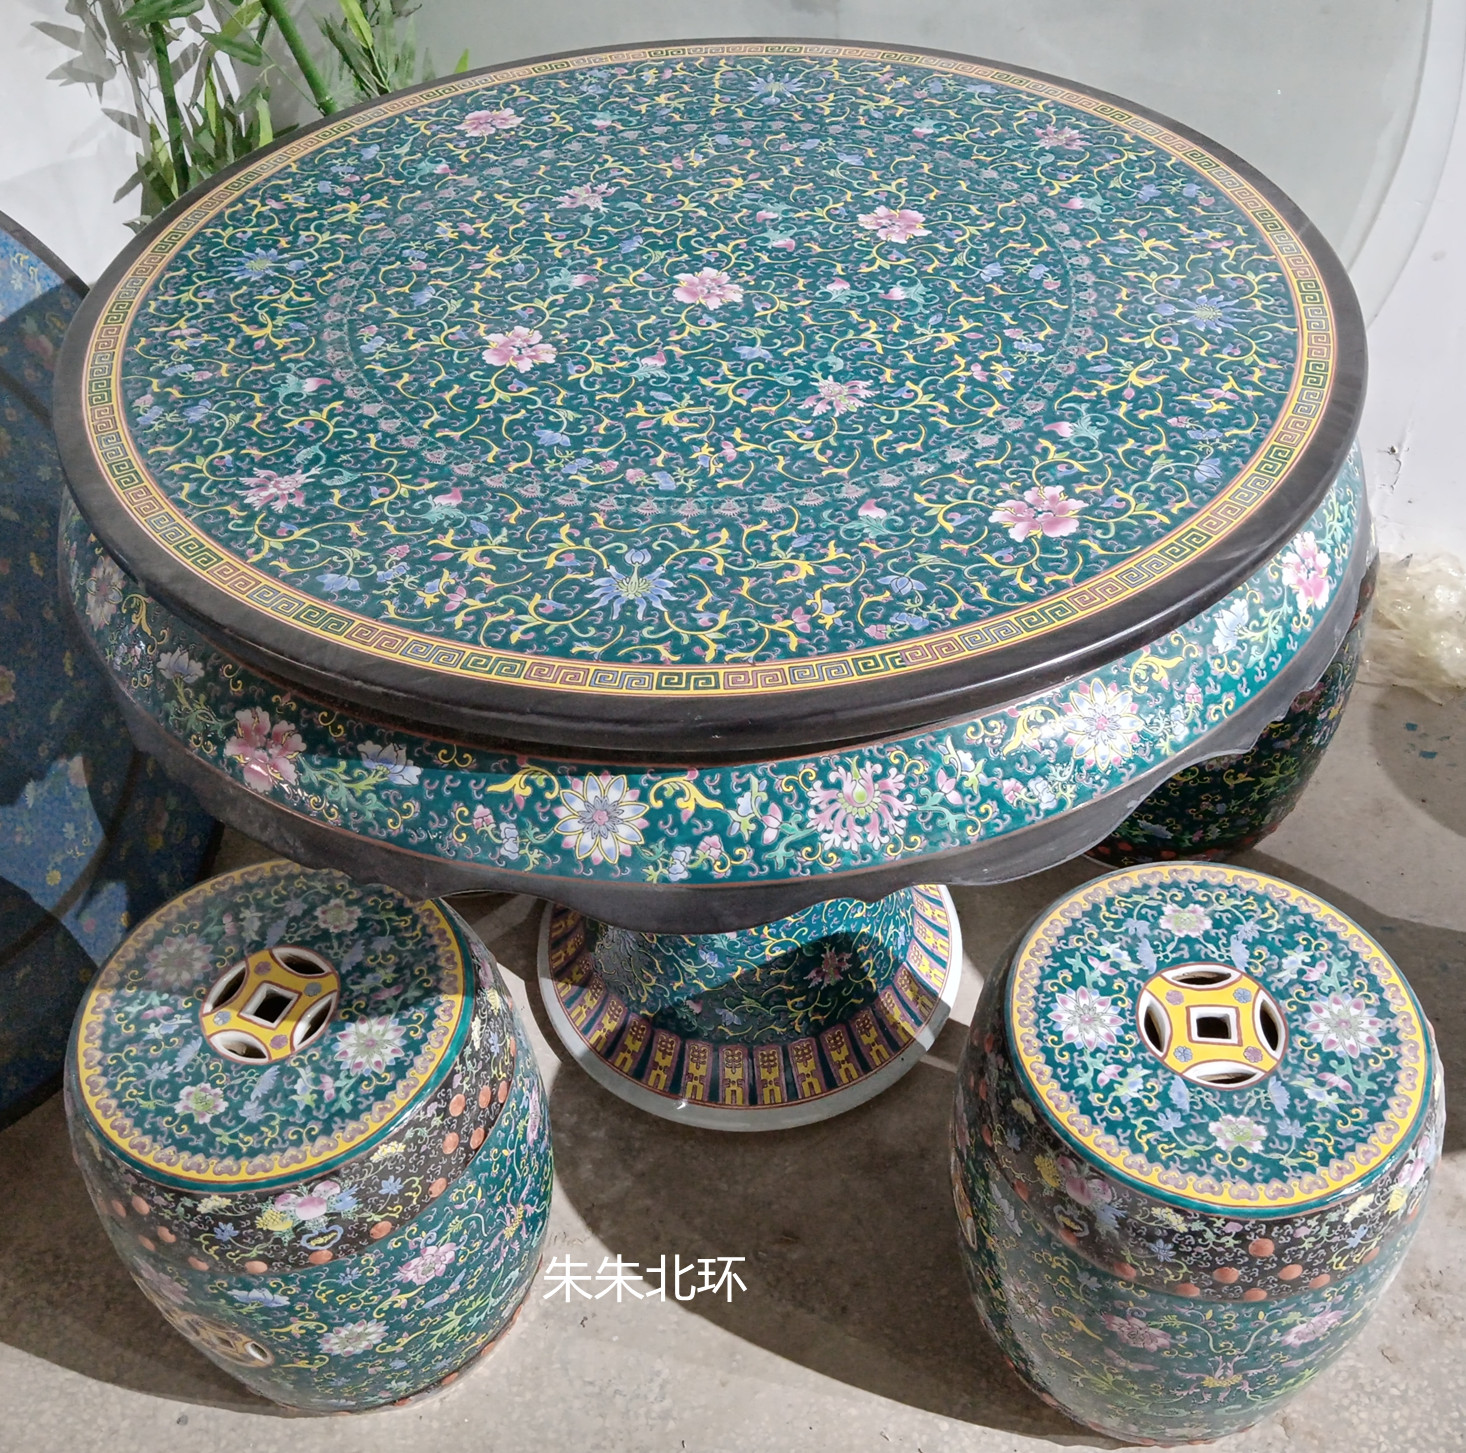 景德镇陶瓷器桌凳子套装中式古典手绘粉彩瓷桌高档花卉纹圆桌椅90